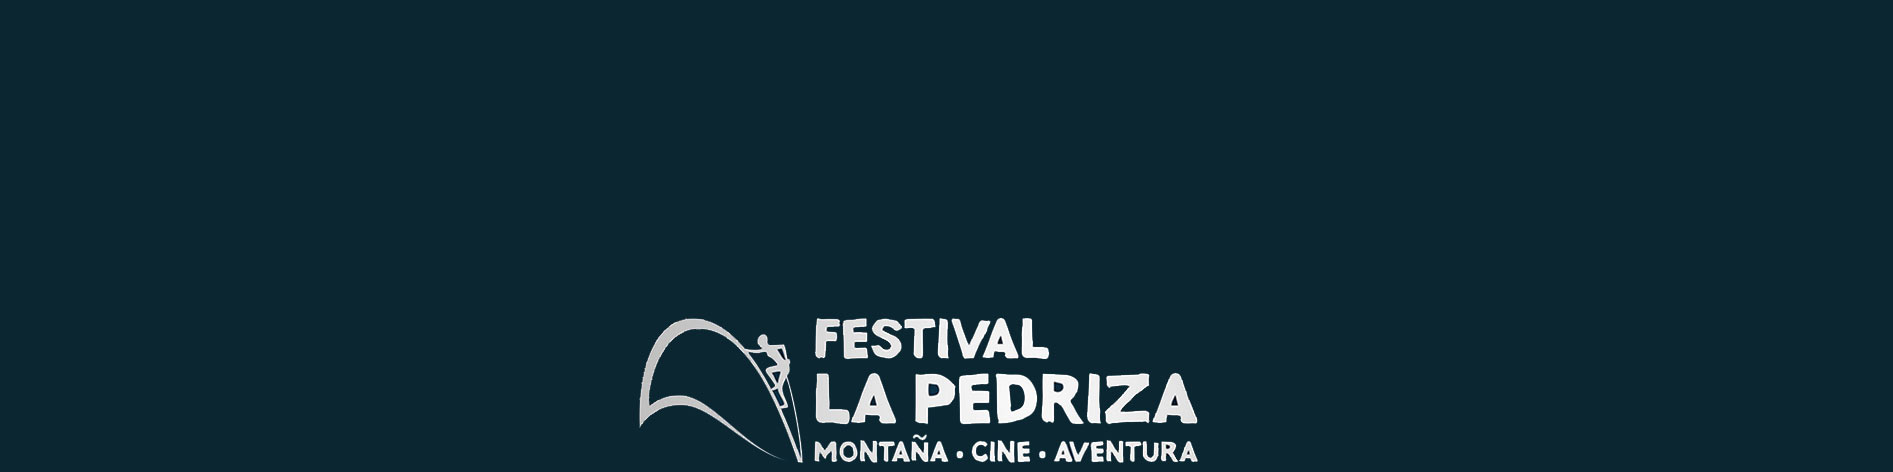 Del 5 al 15 de mayo se celebra el Festival La Pedriza: montaña, cine y aventura en  Manzanares El Real, Soto del Real, El Boalo, Cerceda y Mataelpino